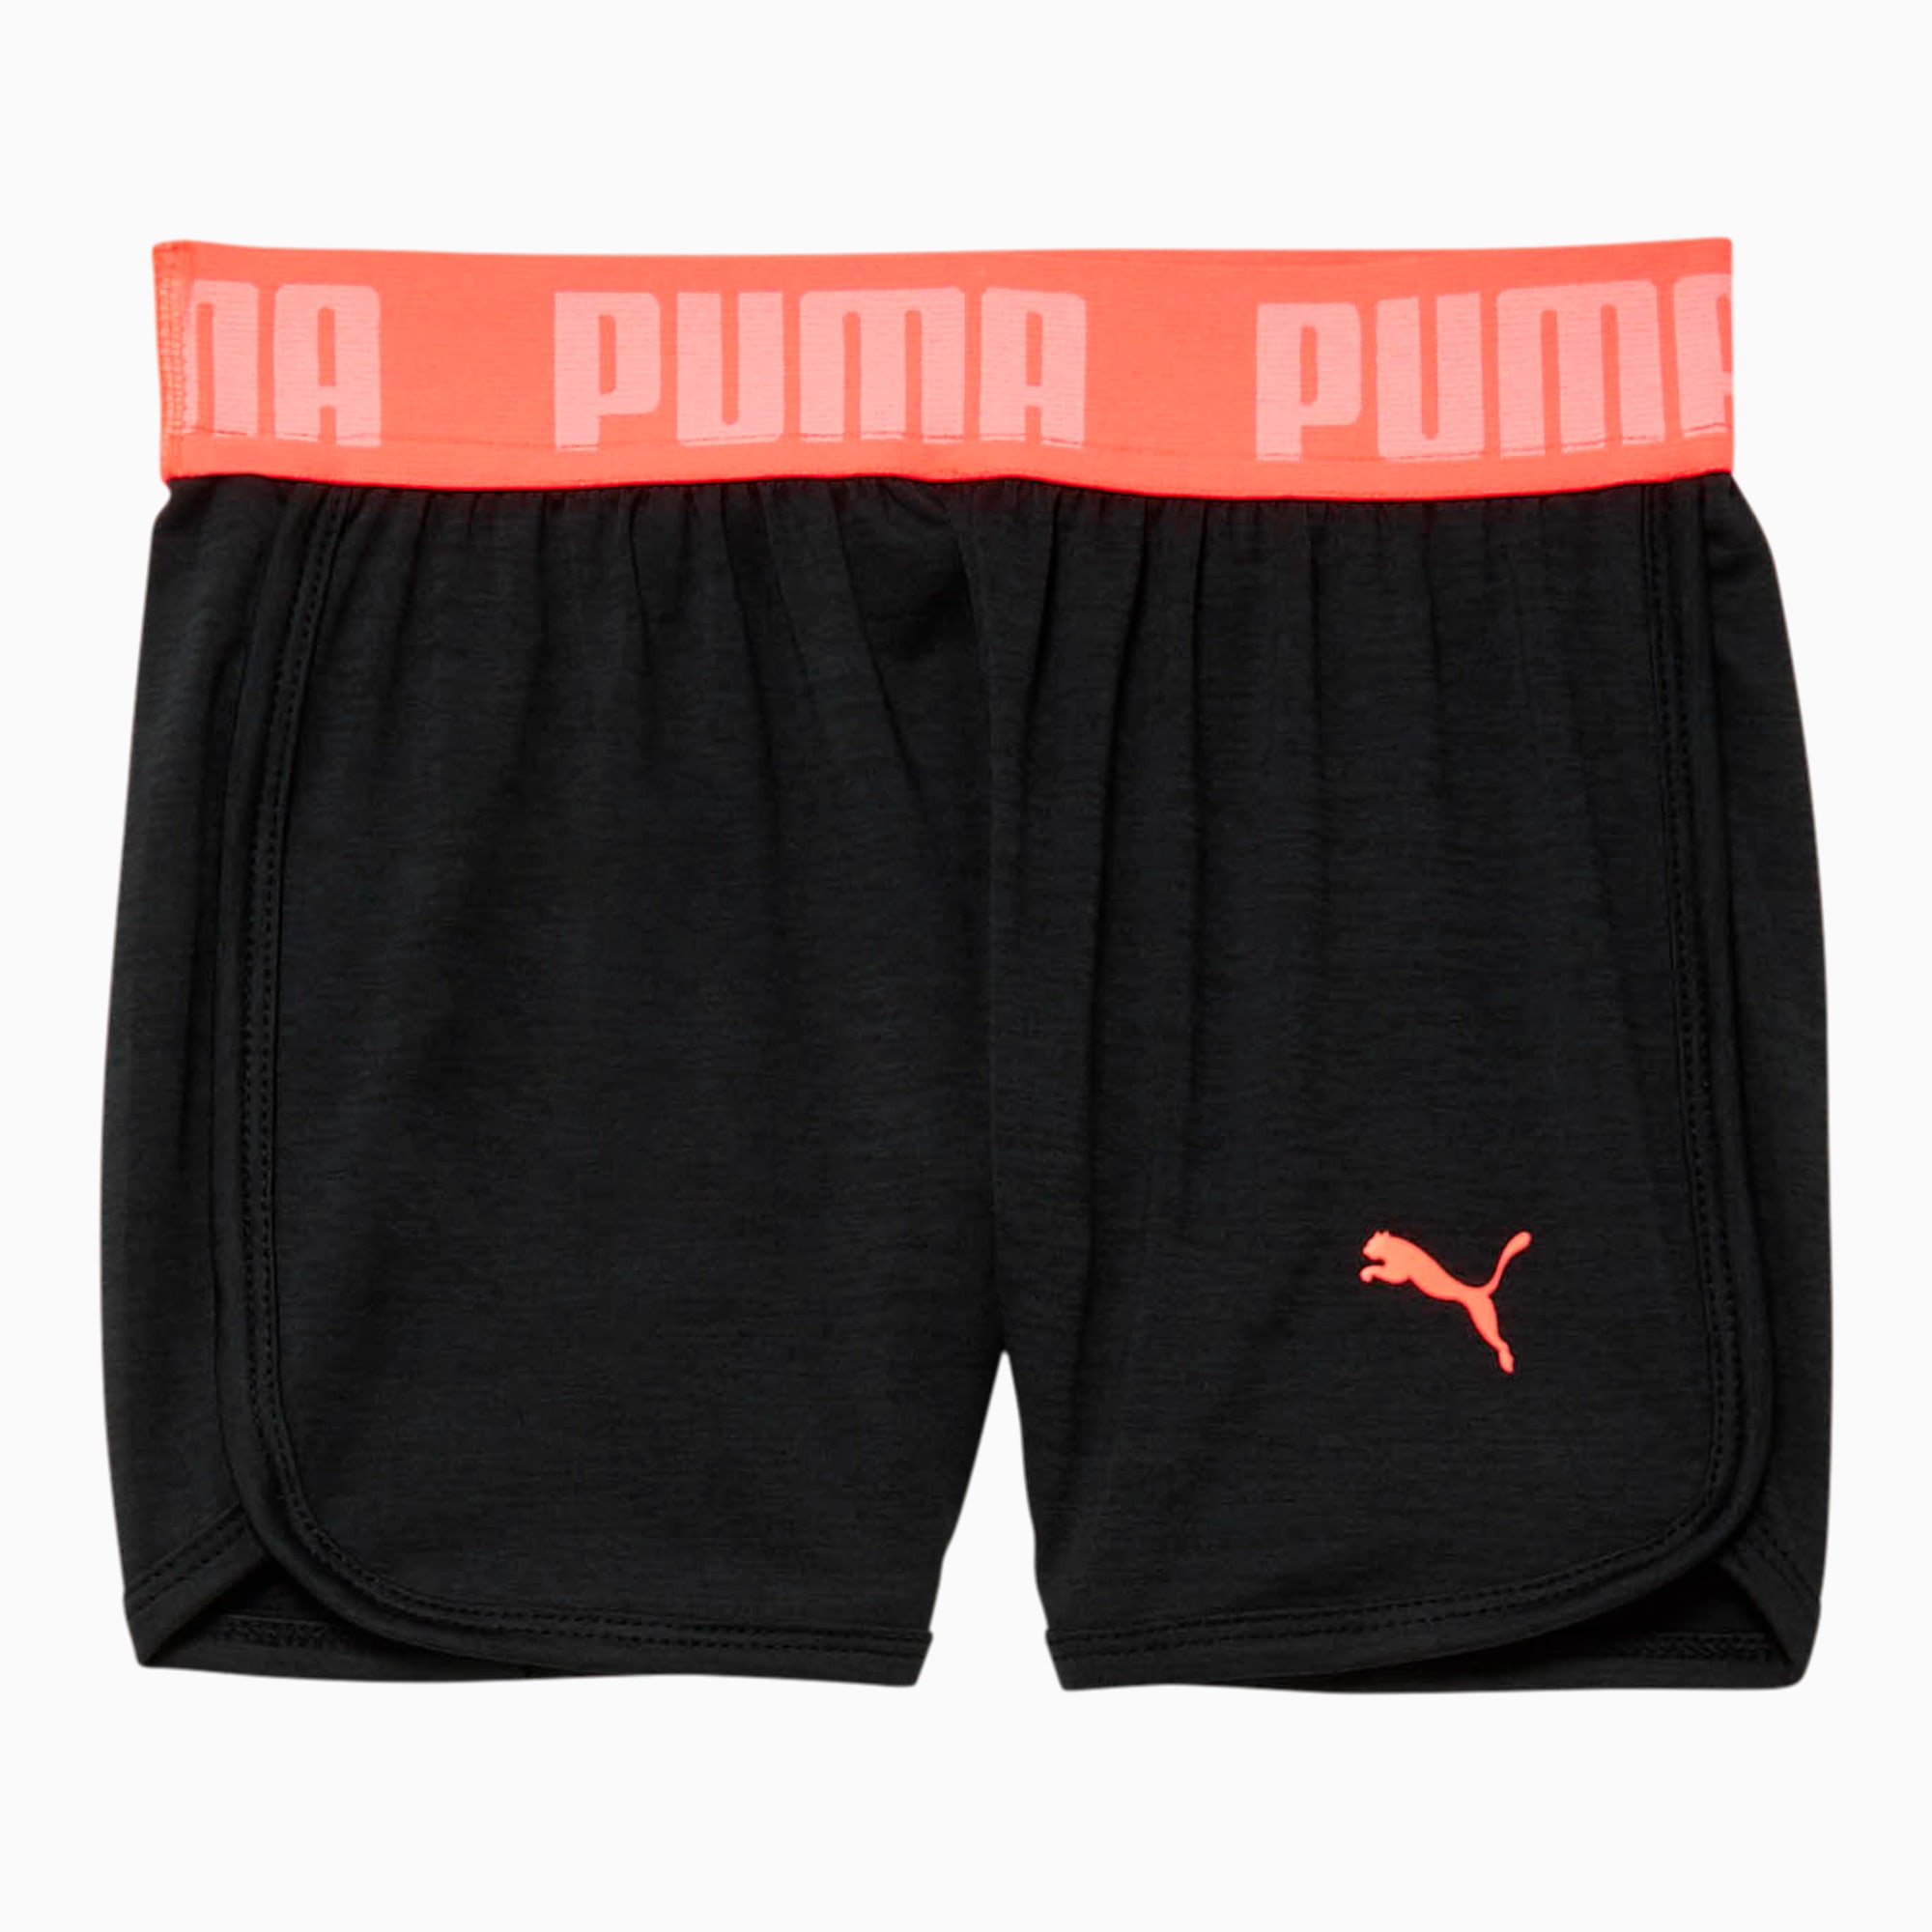 puma kids shorts